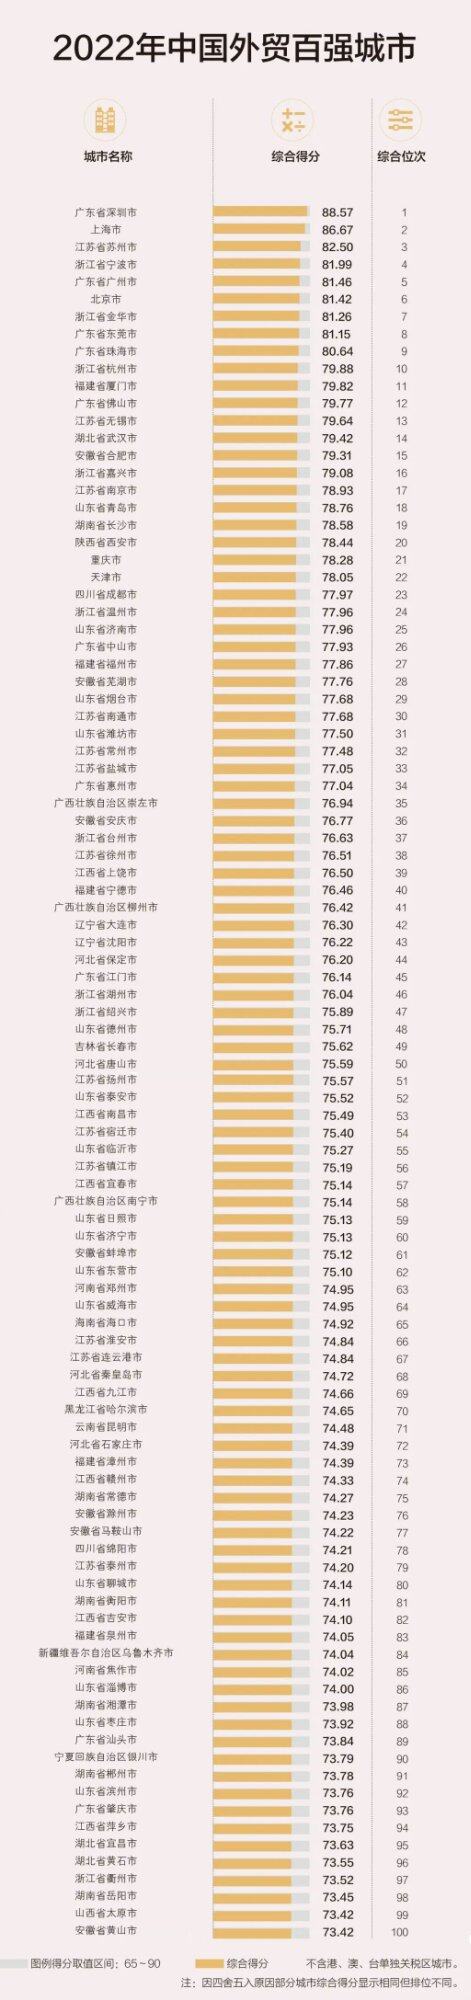 虽然惠州GDP全省排名第五，但从综合实力来看，排名第七是名符其实。